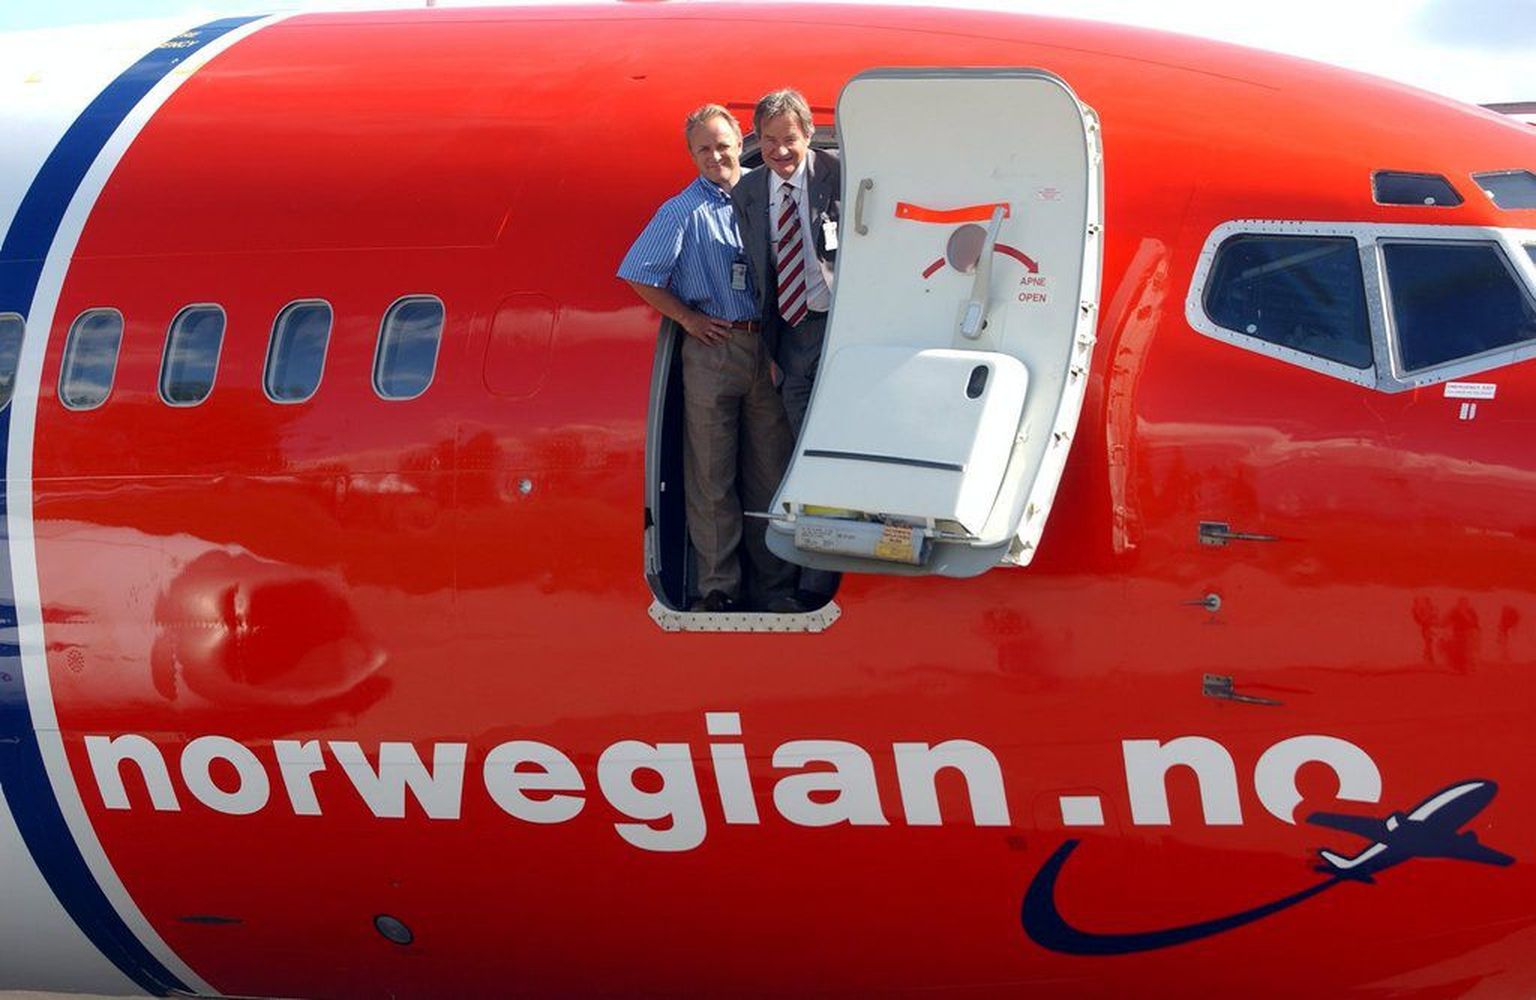 Odavlennu ettevõtte Norwegian lennuk.